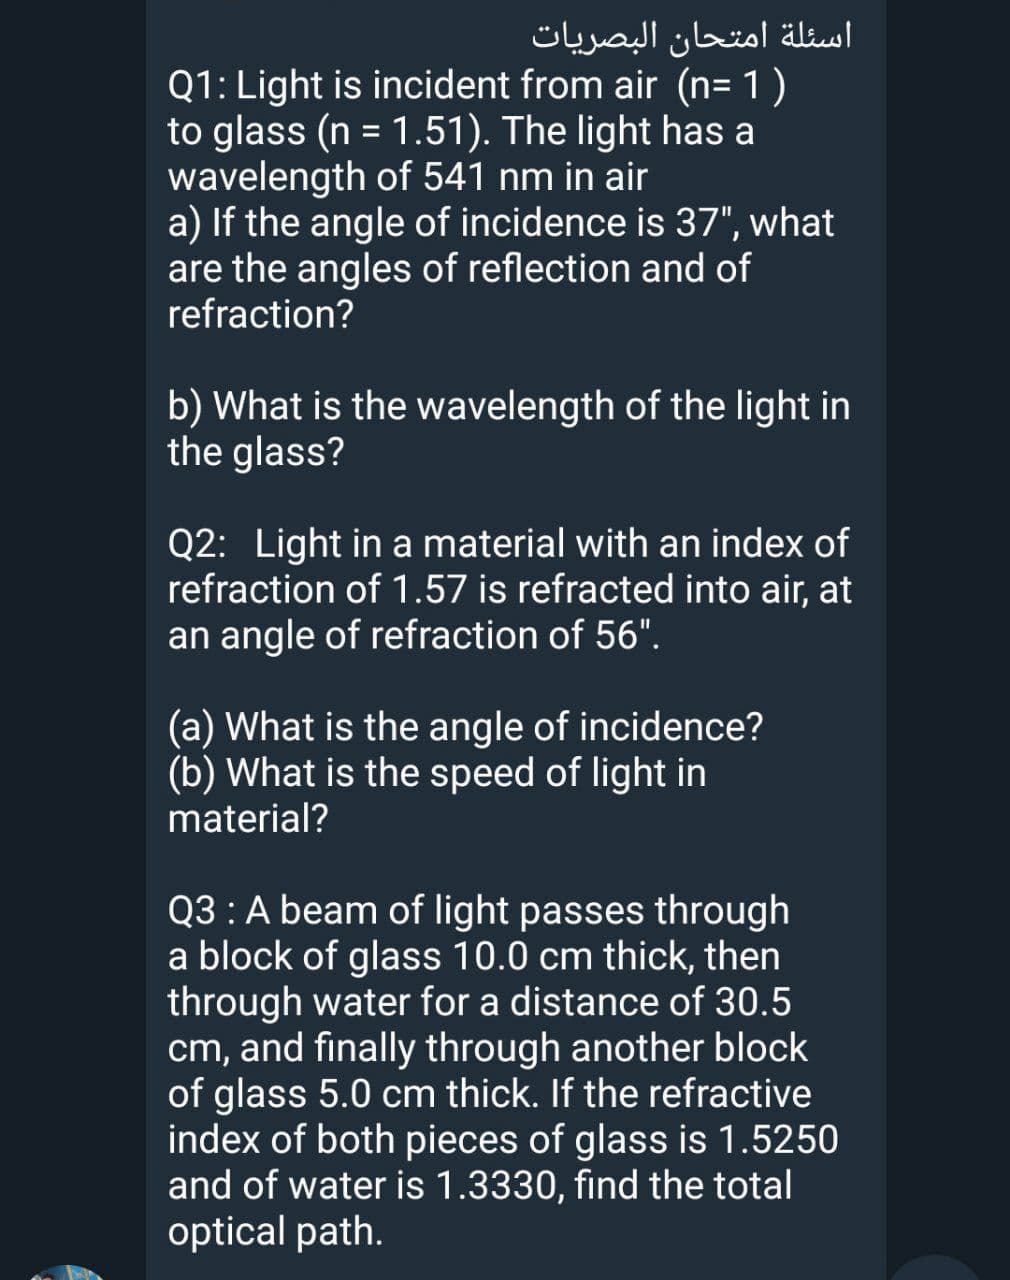 اسئلة امتحان البصريات
Q1: Light is incident from air (n= 1)
to glass (n = 1.51). The light has a
wavelength of 541 nm in air
a) If the angle of incidence is 37", what
are the angles of reflection and of
refraction?
%3D
b) What is the wavelength of the light in
the glass?
Q2: Light in a material with an index of
refraction of 1.57 is refracted into air, at
an angle of refraction of 56".
(a) What is the angle of incidence?
(b) What is the speed of light in
material?
Q3 : A beam of light passes through
a block of glass 10.0 cm thick, then
through water for a distance of 30.5
cm, and finally through another block
of glass 5.0 cm thick. If the refractive
index of both pieces of glass is 1.5250
and of water is 1.3330, find the total
optical path.
